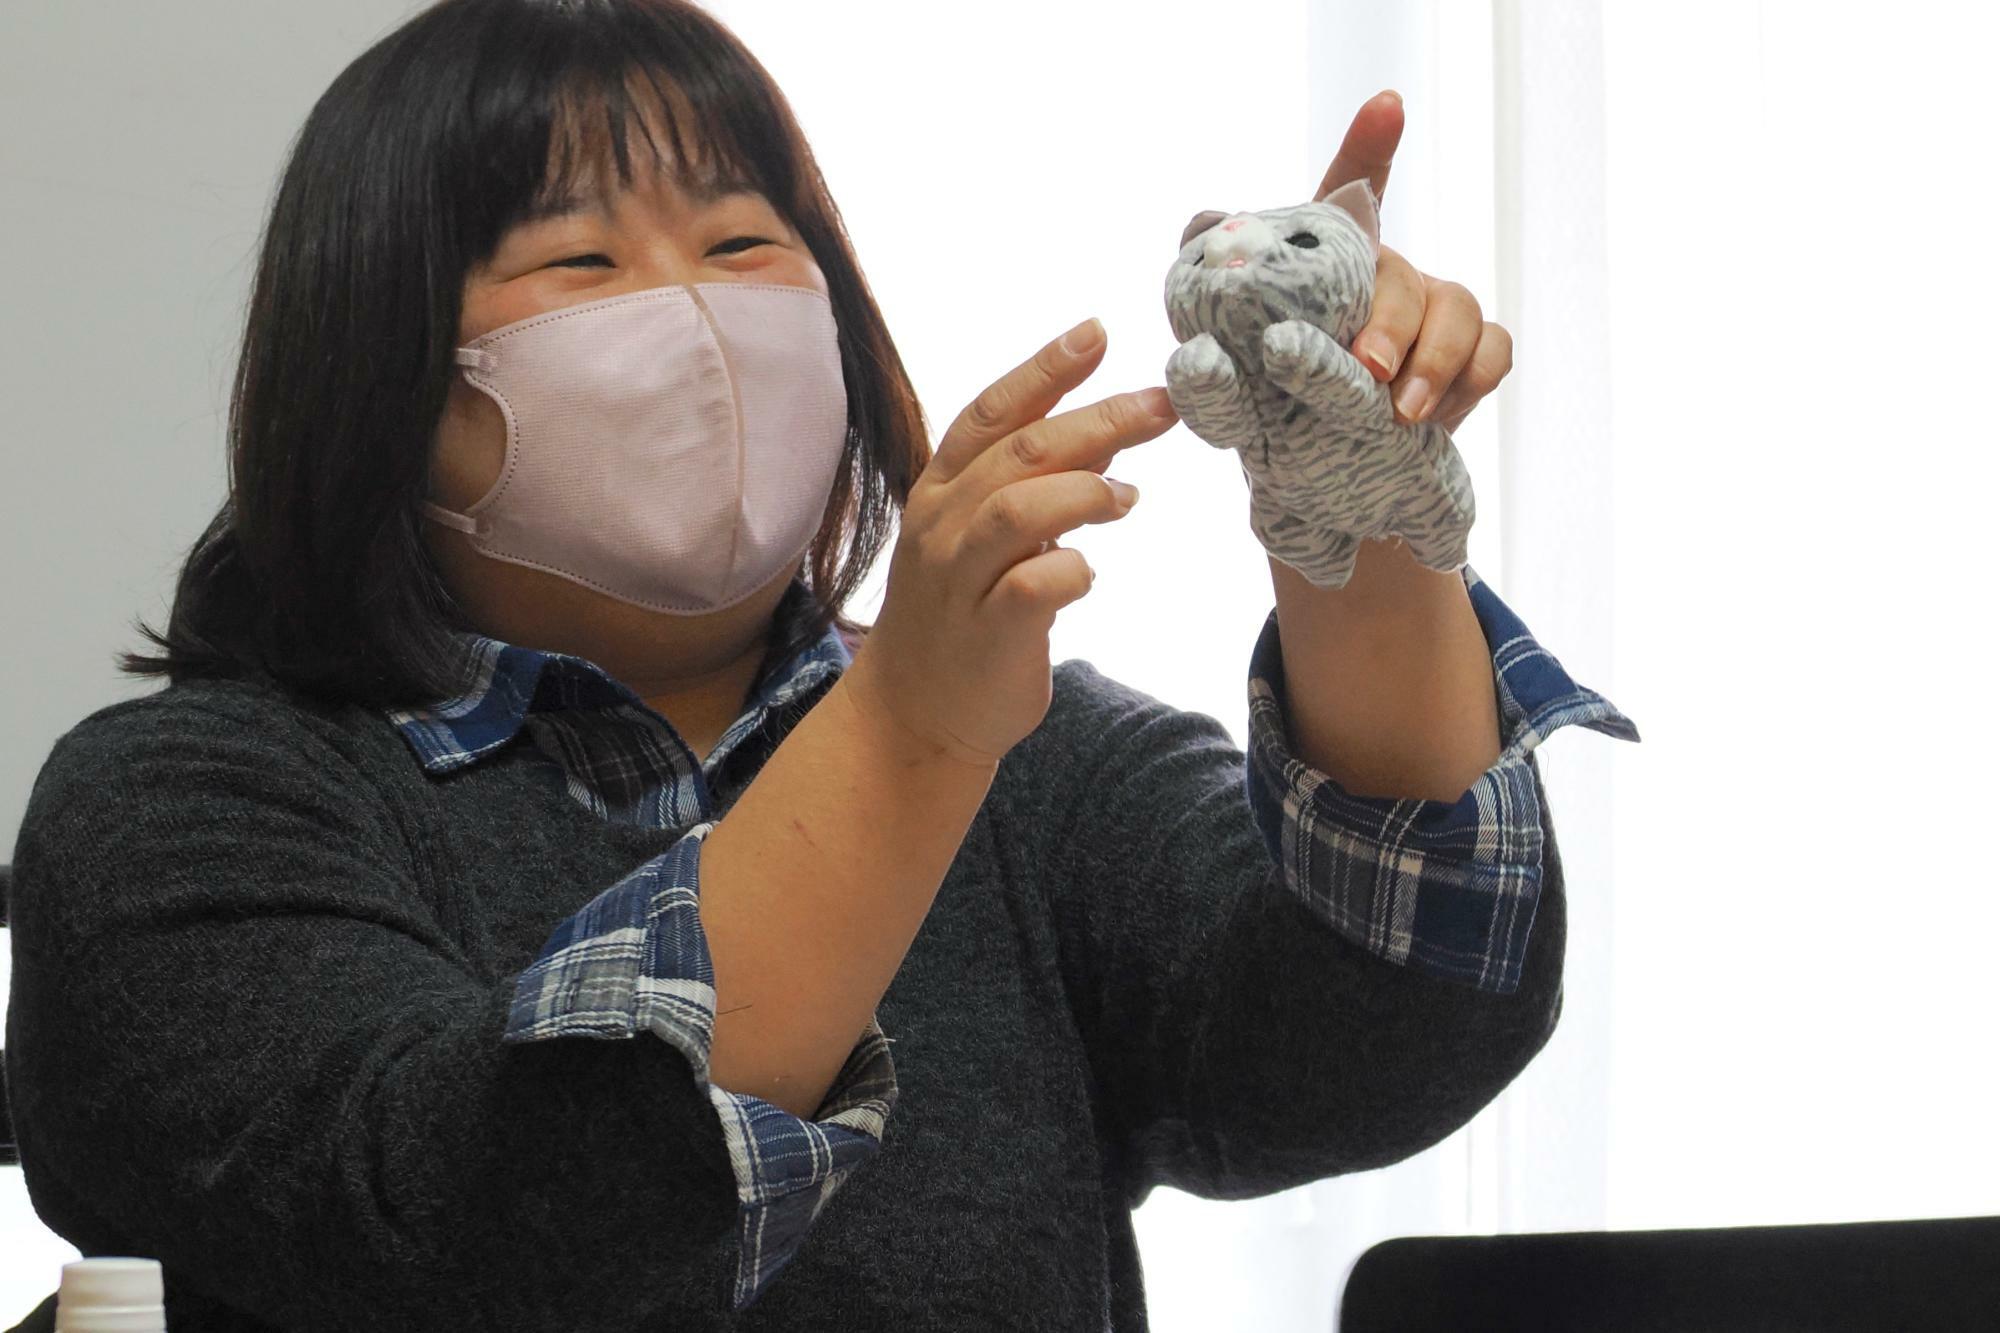 「那珂川ねこネットワーク」の小林綾子さん。ぬいぐるみを用いて離乳食を与える方法を伝授。（筆者撮影）